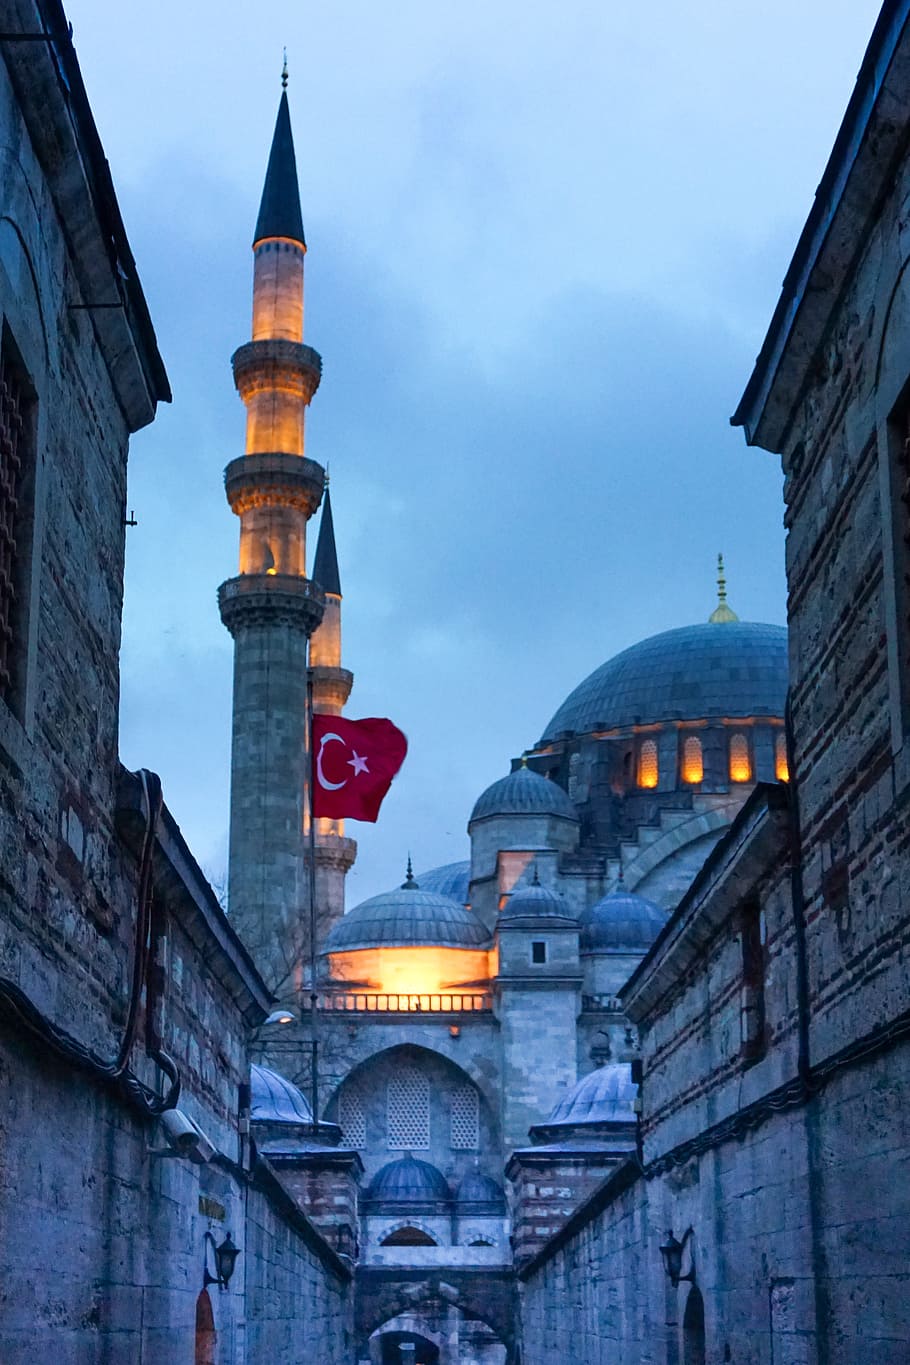 モスク, トルコ, ミナレット, イスタンブール, イスラム教, 夜, フラグ, 三日月, 建築, 建物の外観